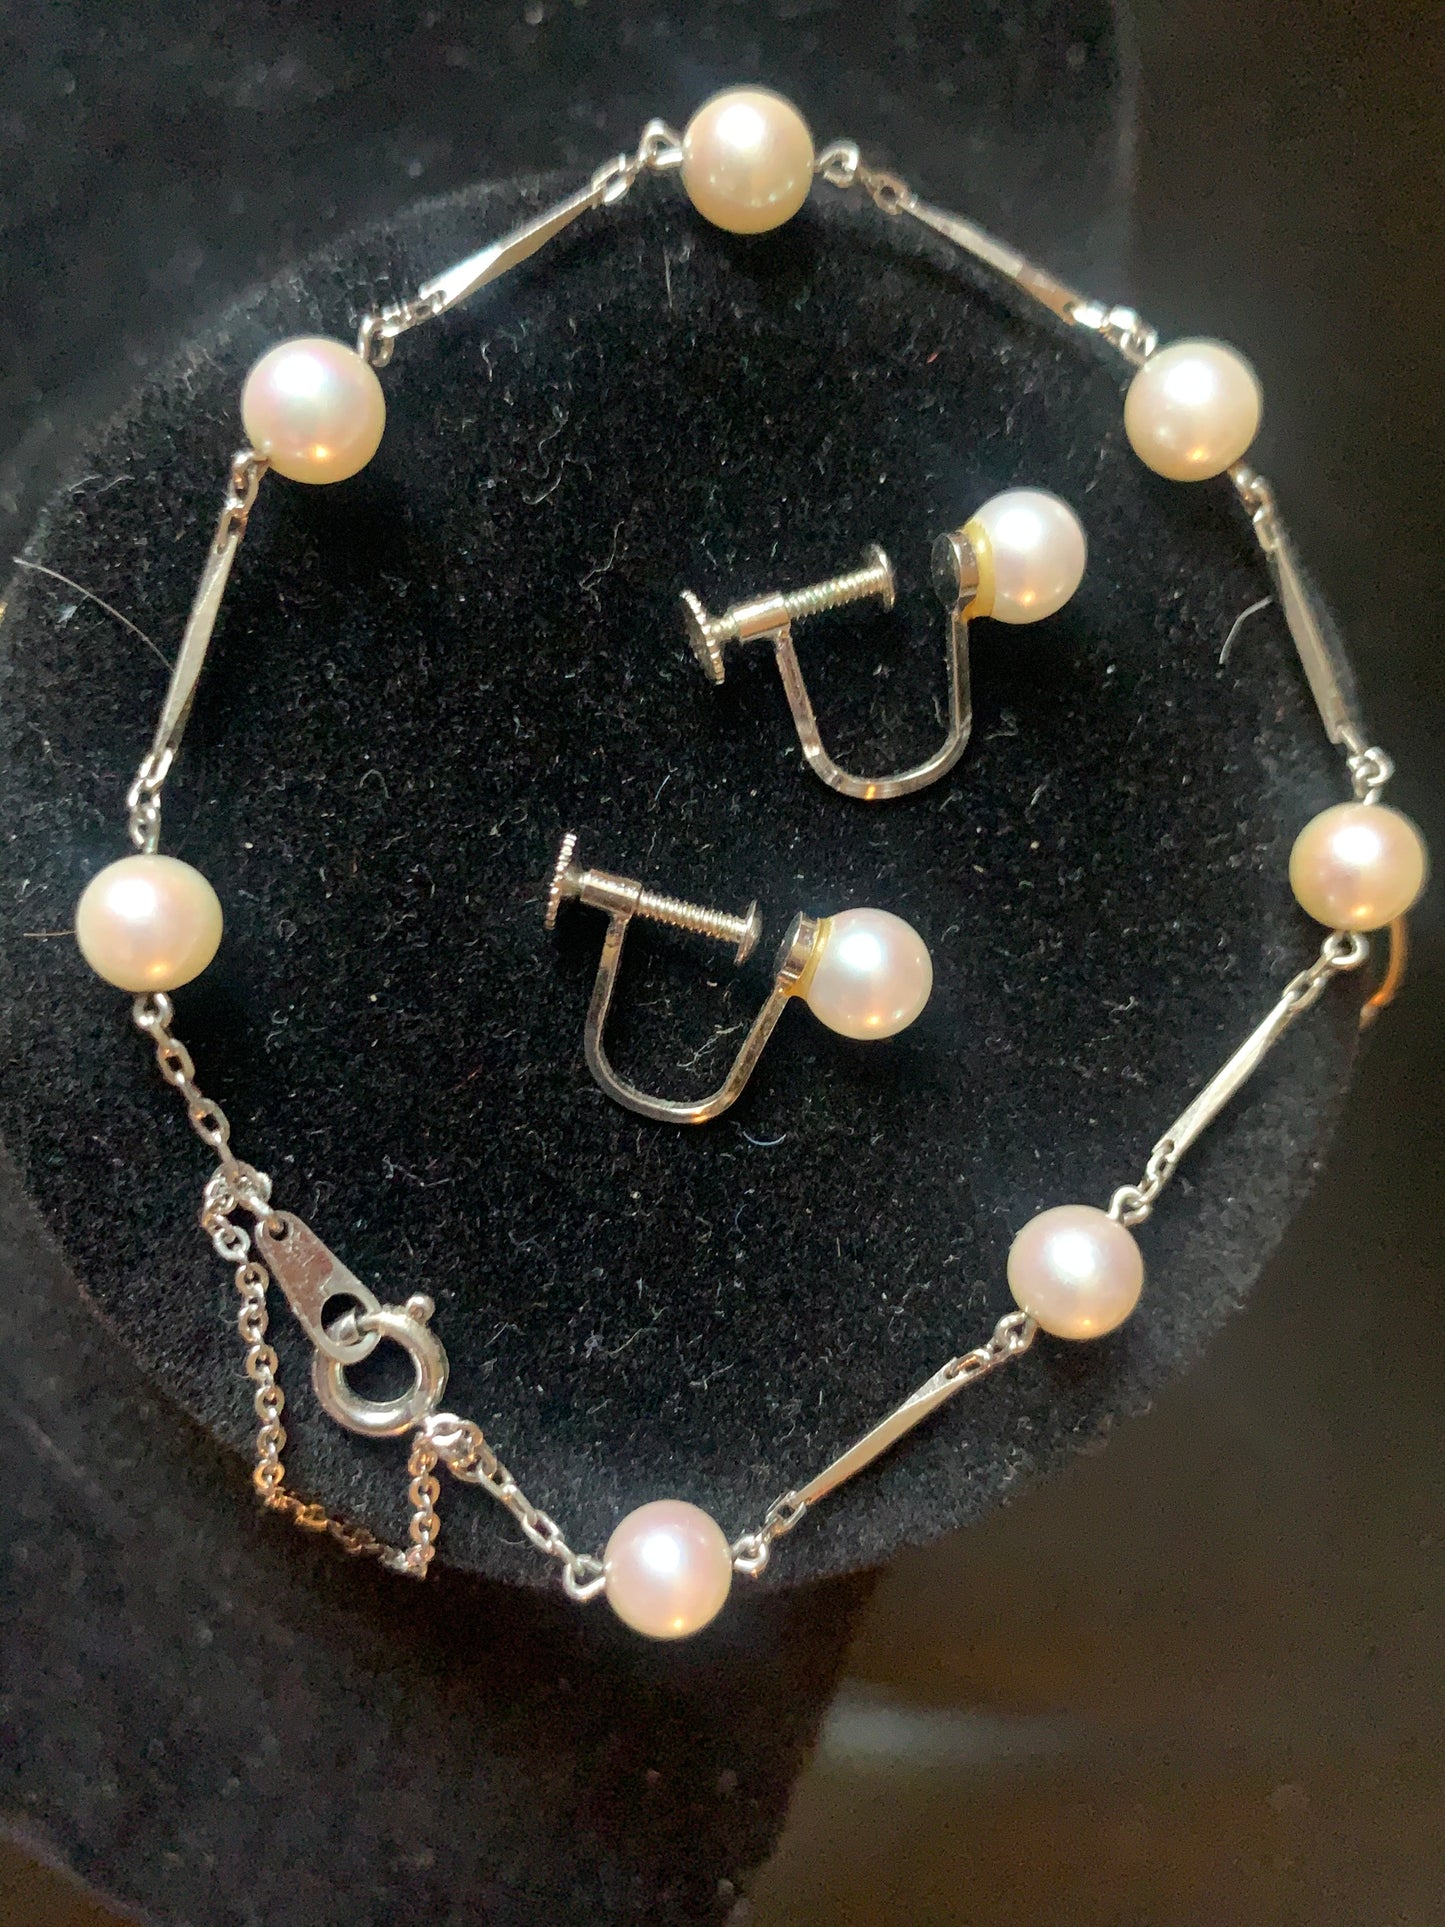 Pearl ear rings and bracelet